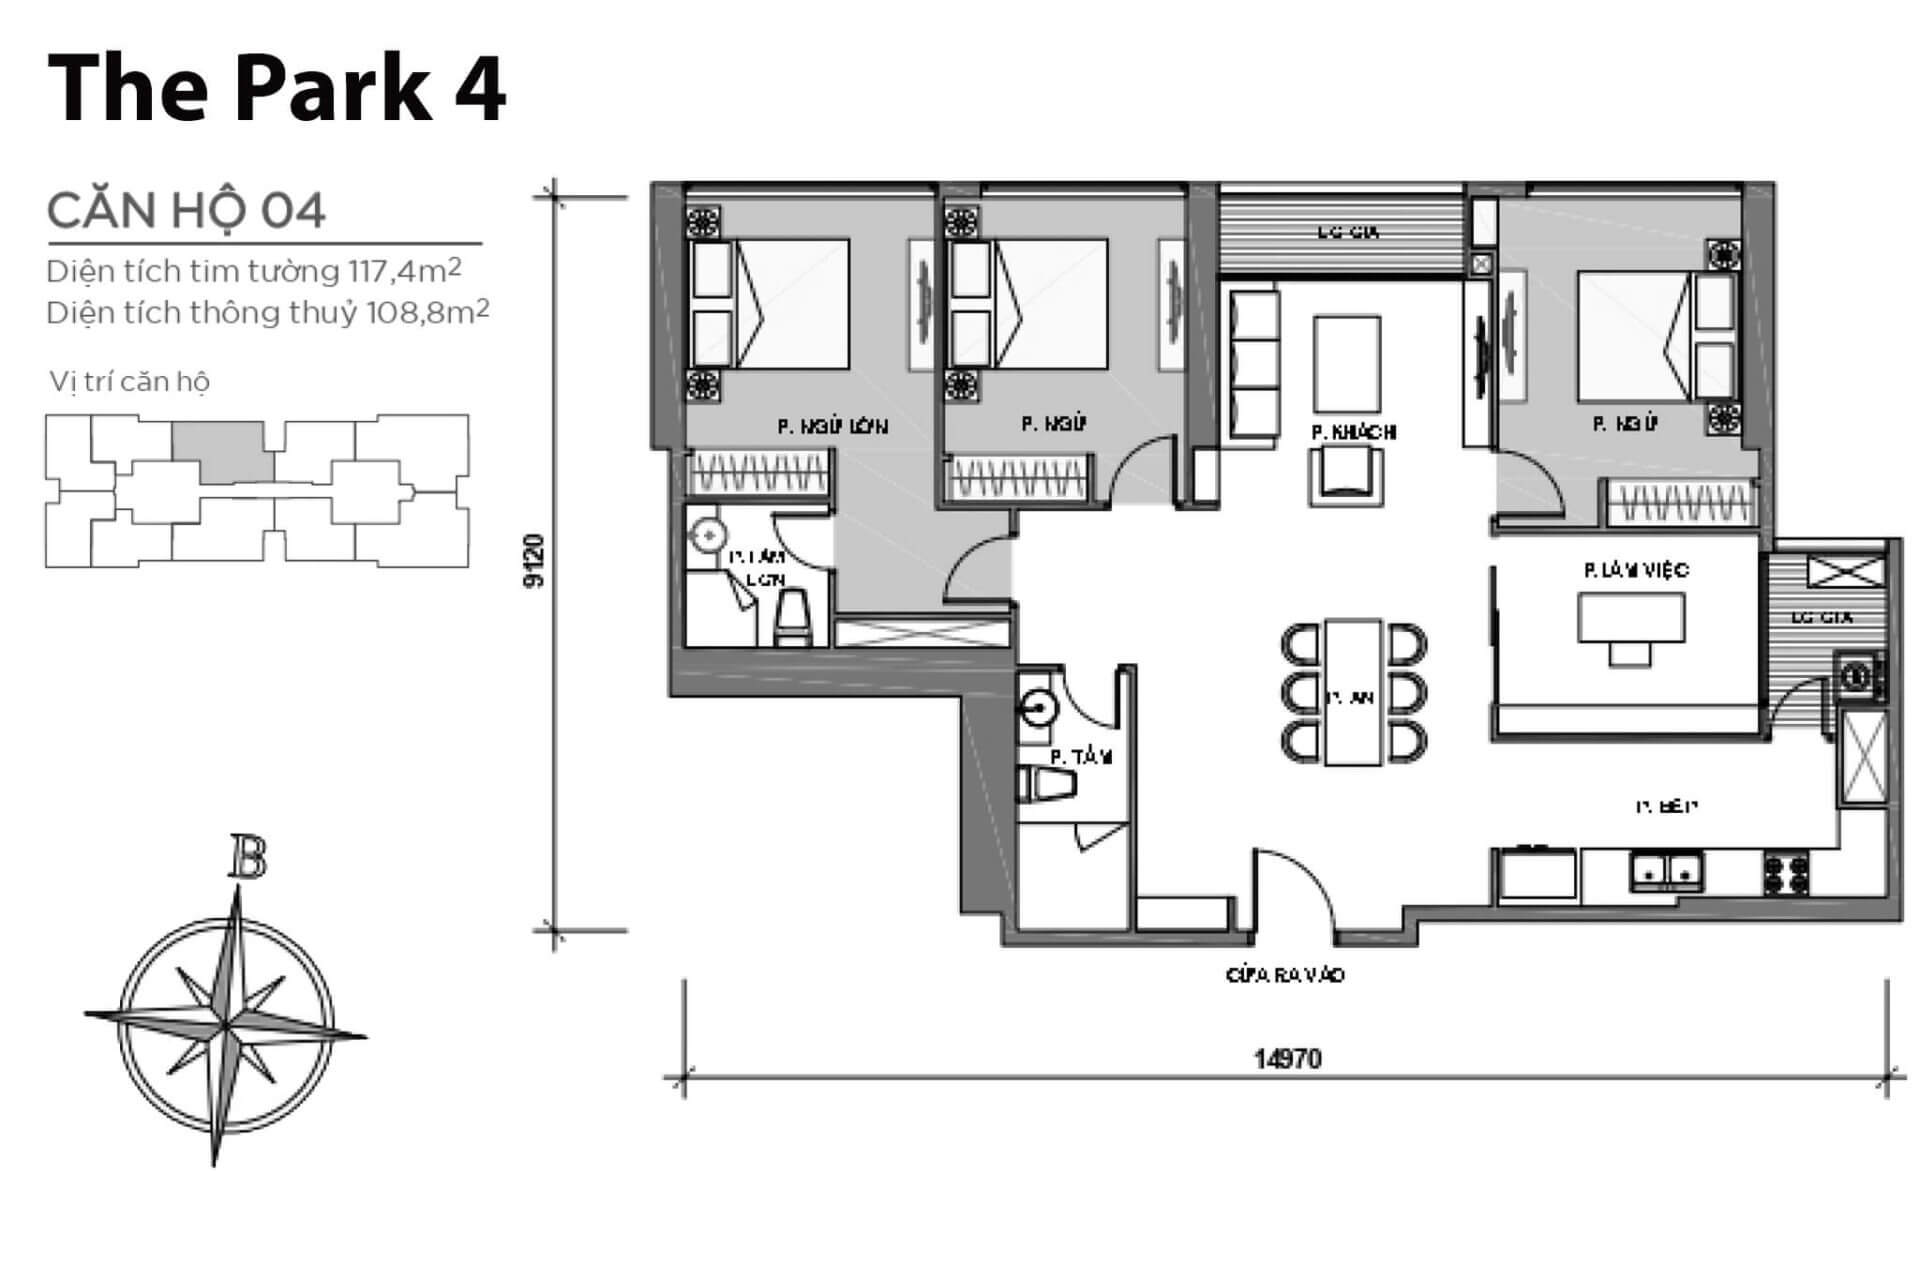 mặt bằng layout căn hộ số 04 Park 4 Vinhomes Central Park